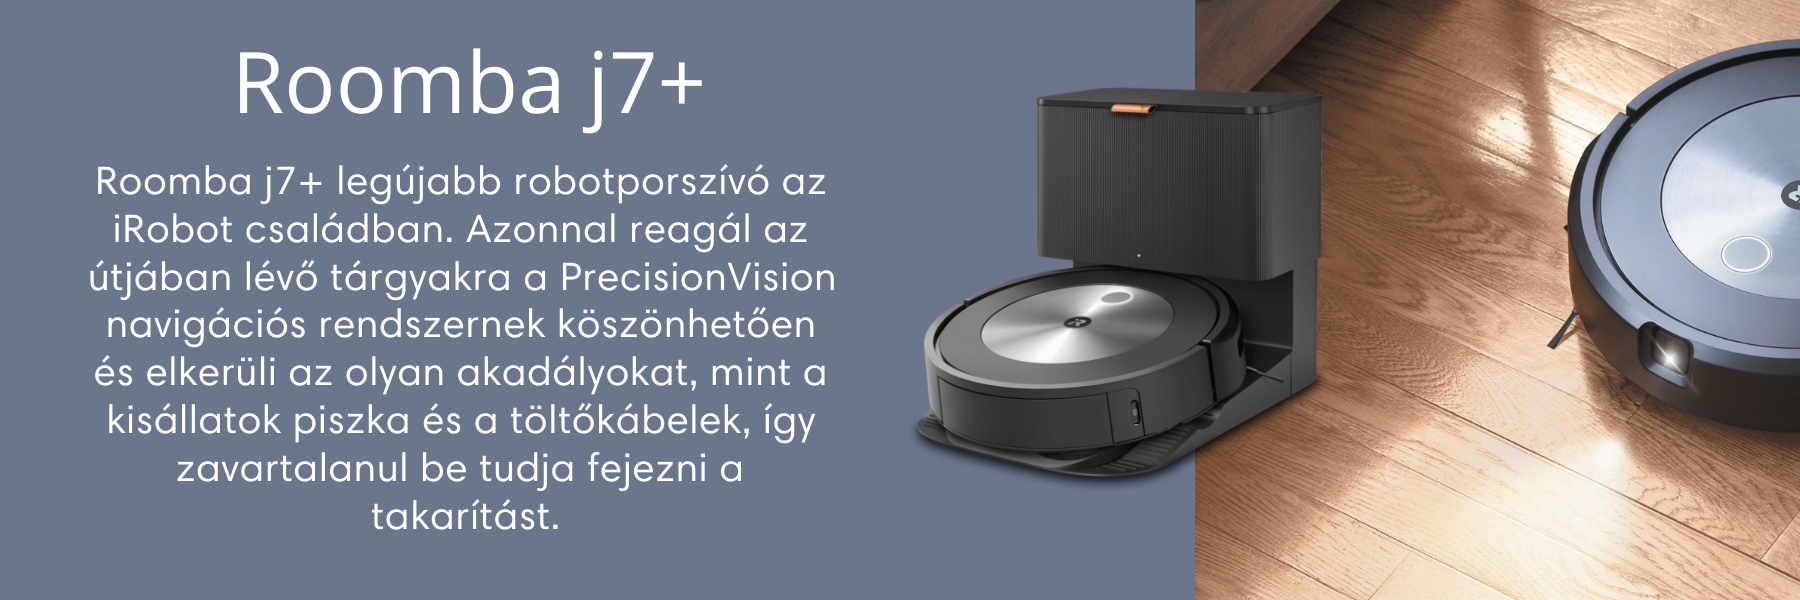 iRobot Roomba j7+ robotporszívó